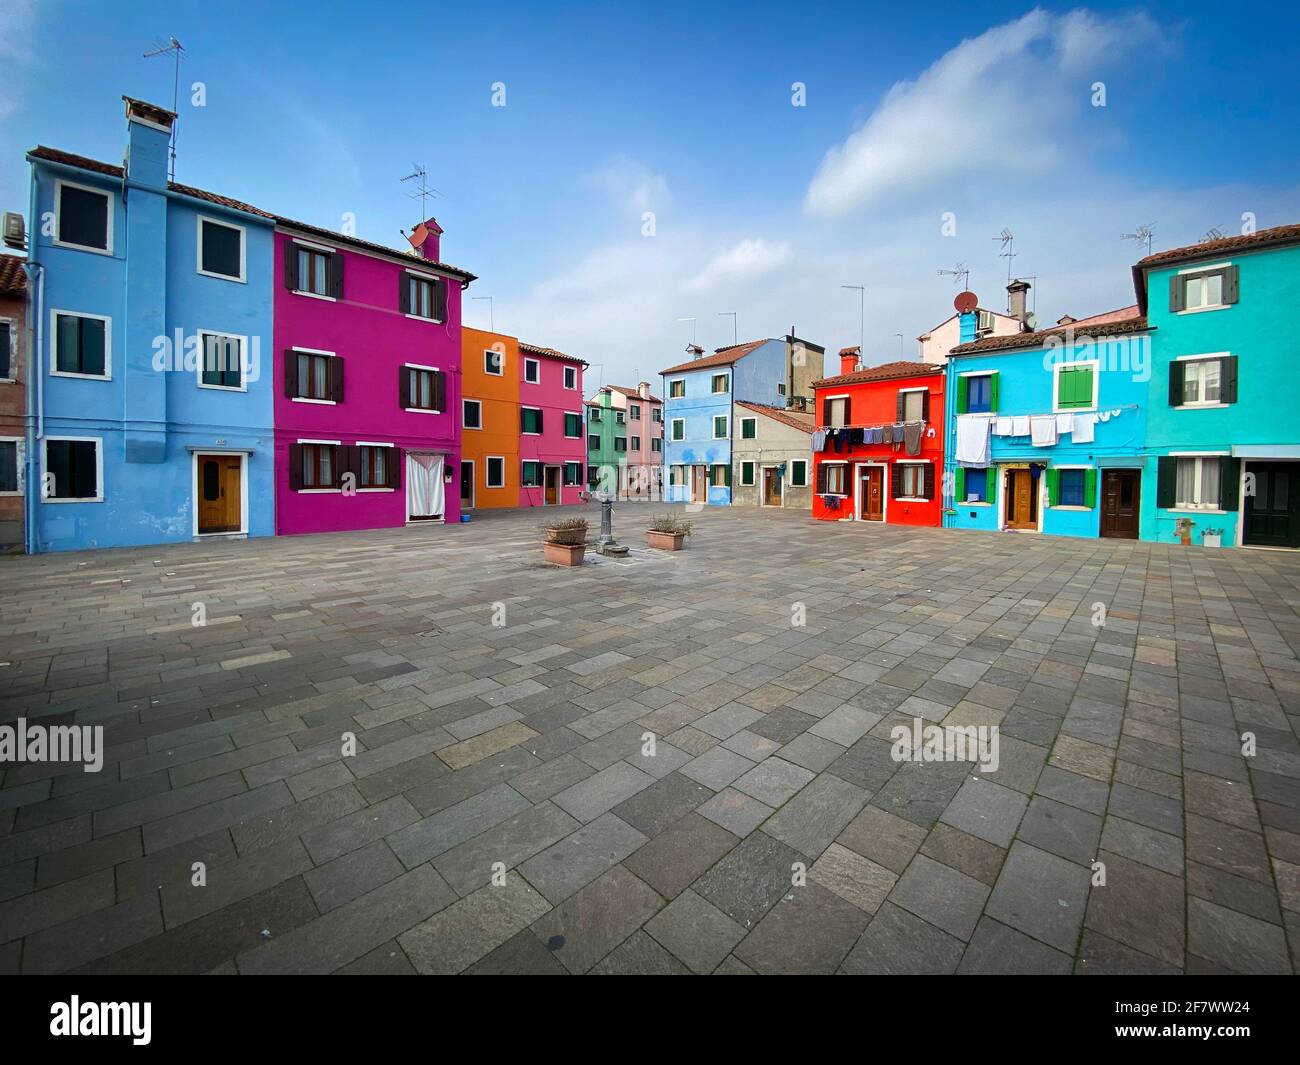 Case colorate su una piccola piazza tradizionale dell'isola di Burano, Venezia, Italia Foto Stock